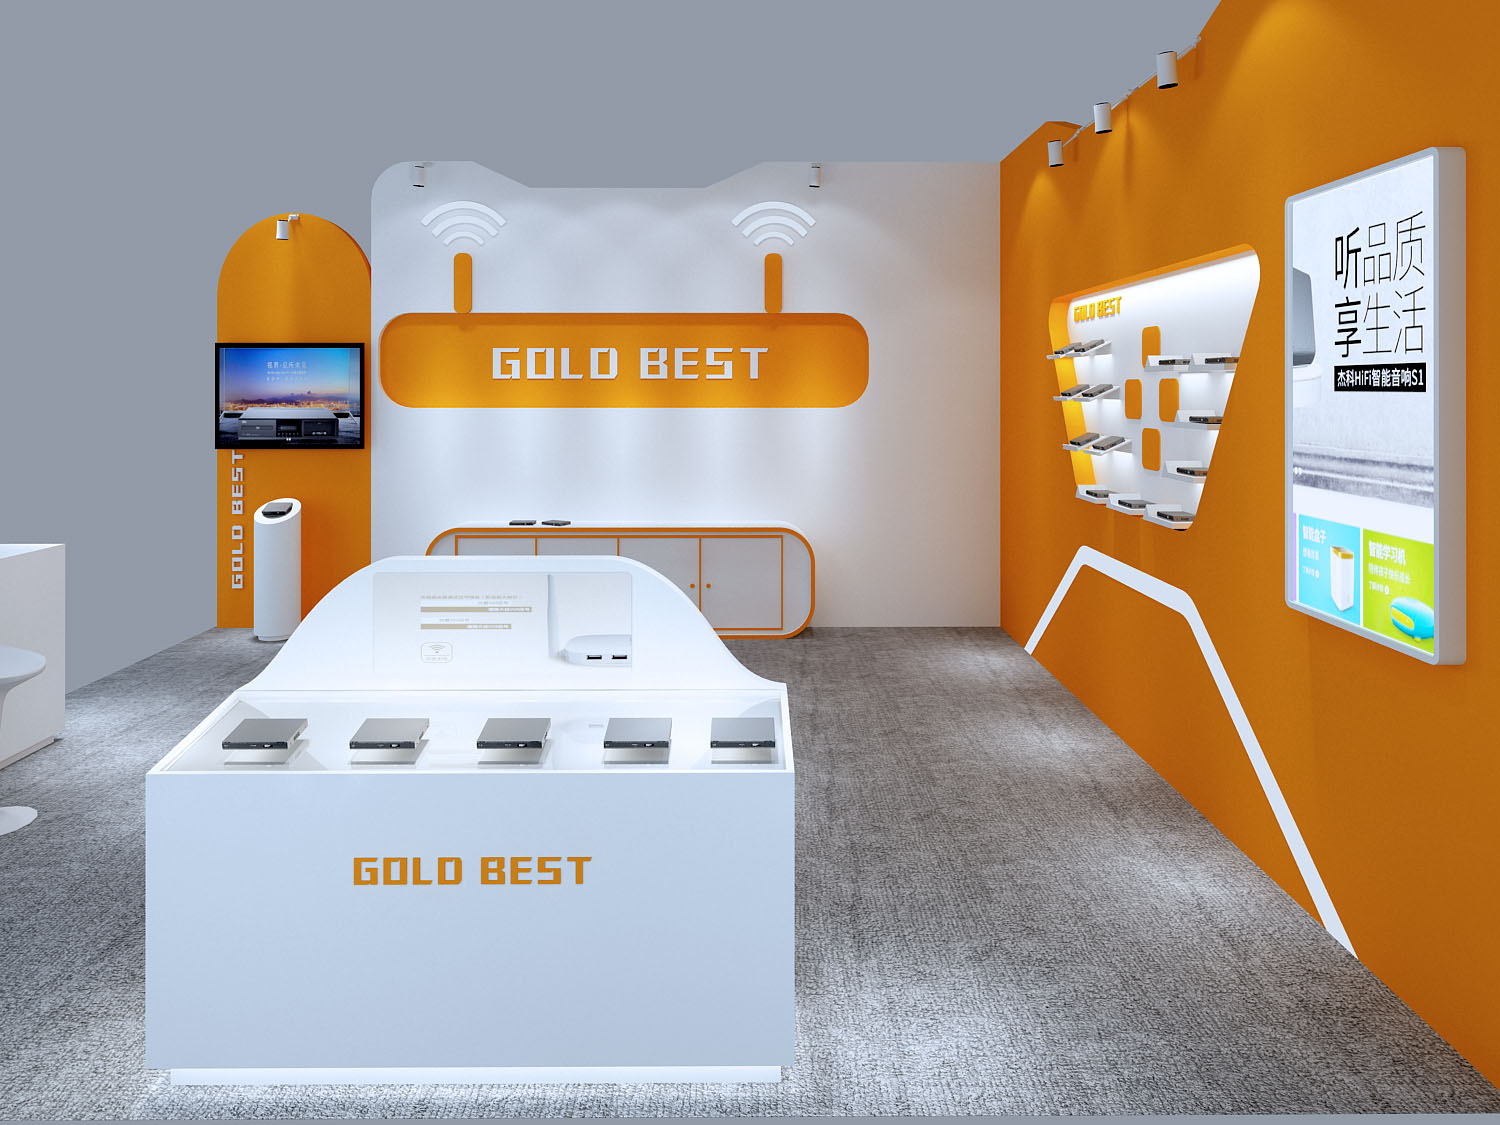 【GOLD BEST】荷兰IBC展台设计搭建